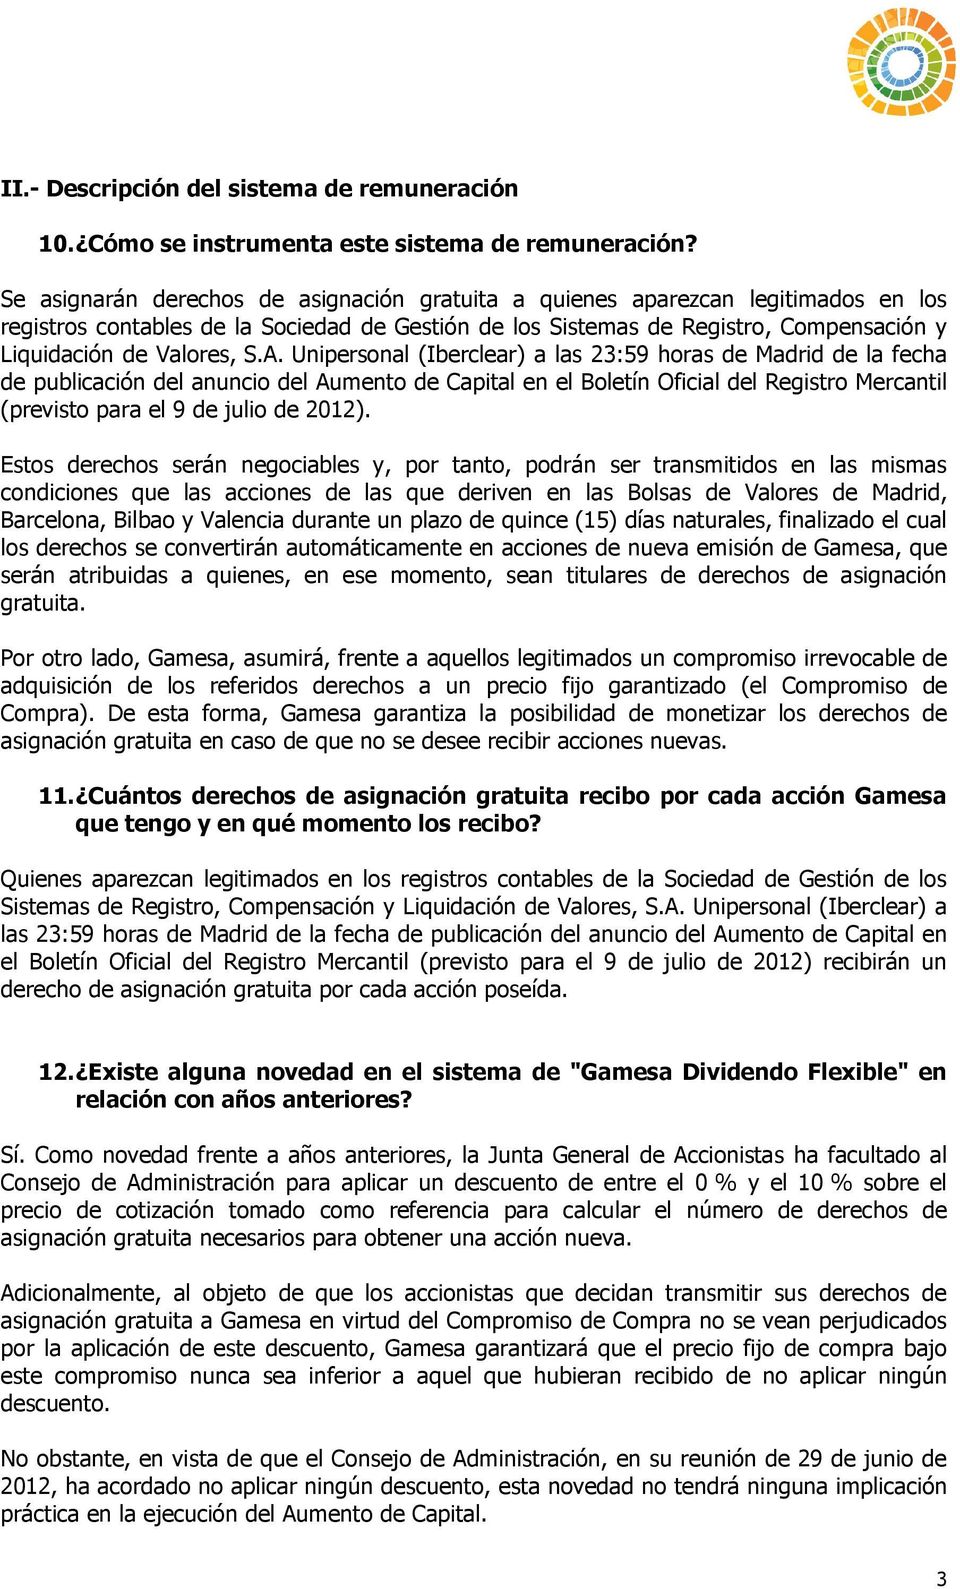 A. Unipersonal (Iberclear) a las 23:59 horas de Madrid de la fecha de publicación del anuncio del Aumento de Capital en el Boletín Oficial del Registro Mercantil (previsto para el 9 de julio de 2012).